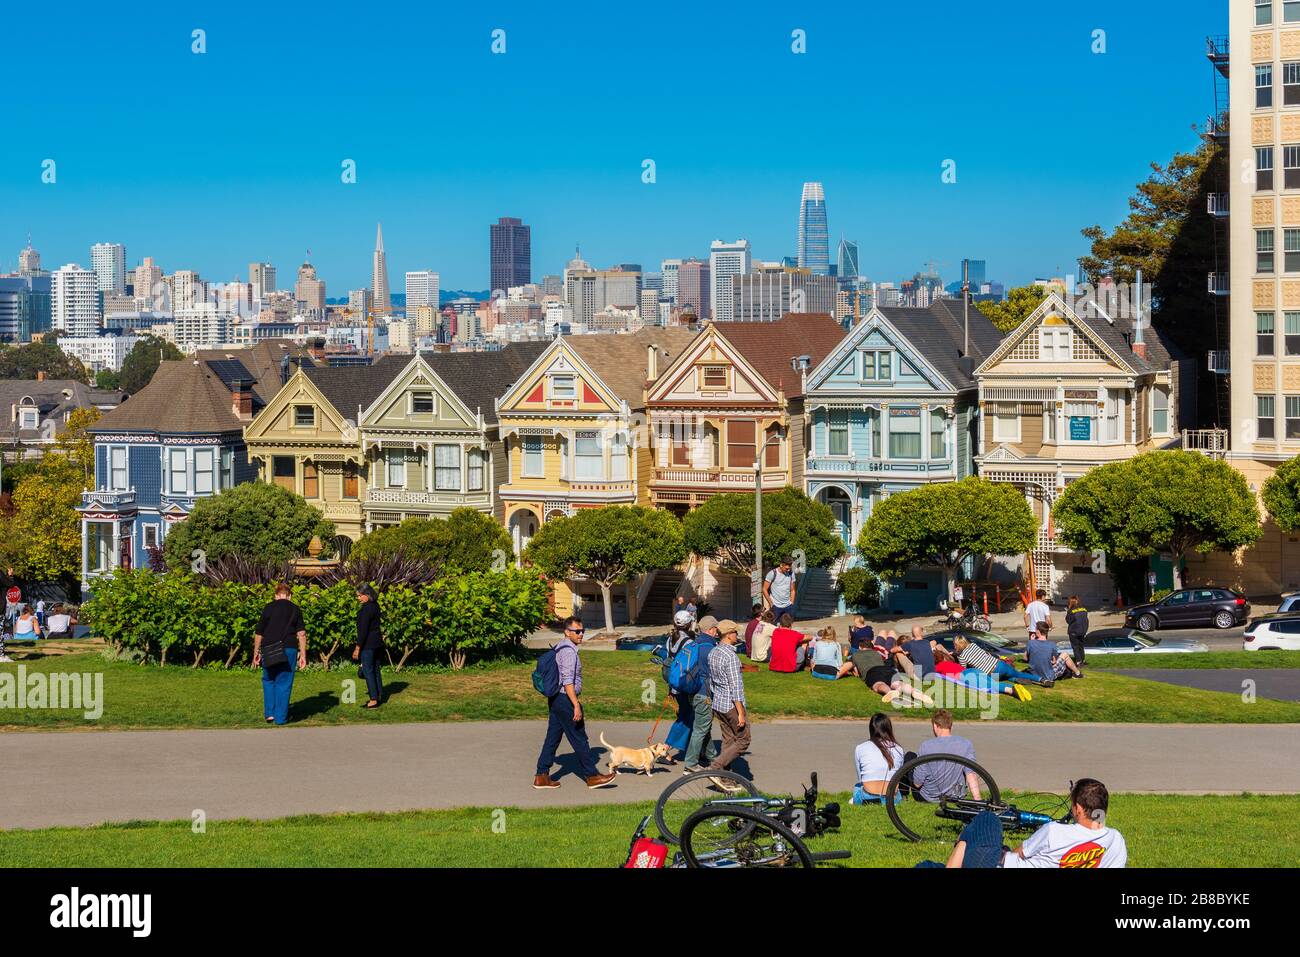 Les gens se détendant dans le parc devant les Maisons de femmes peintes à San Francisco, Californie, États-Unis. Les gratte-ciel de la ville sont visibles en arrière-plan. Banque D'Images